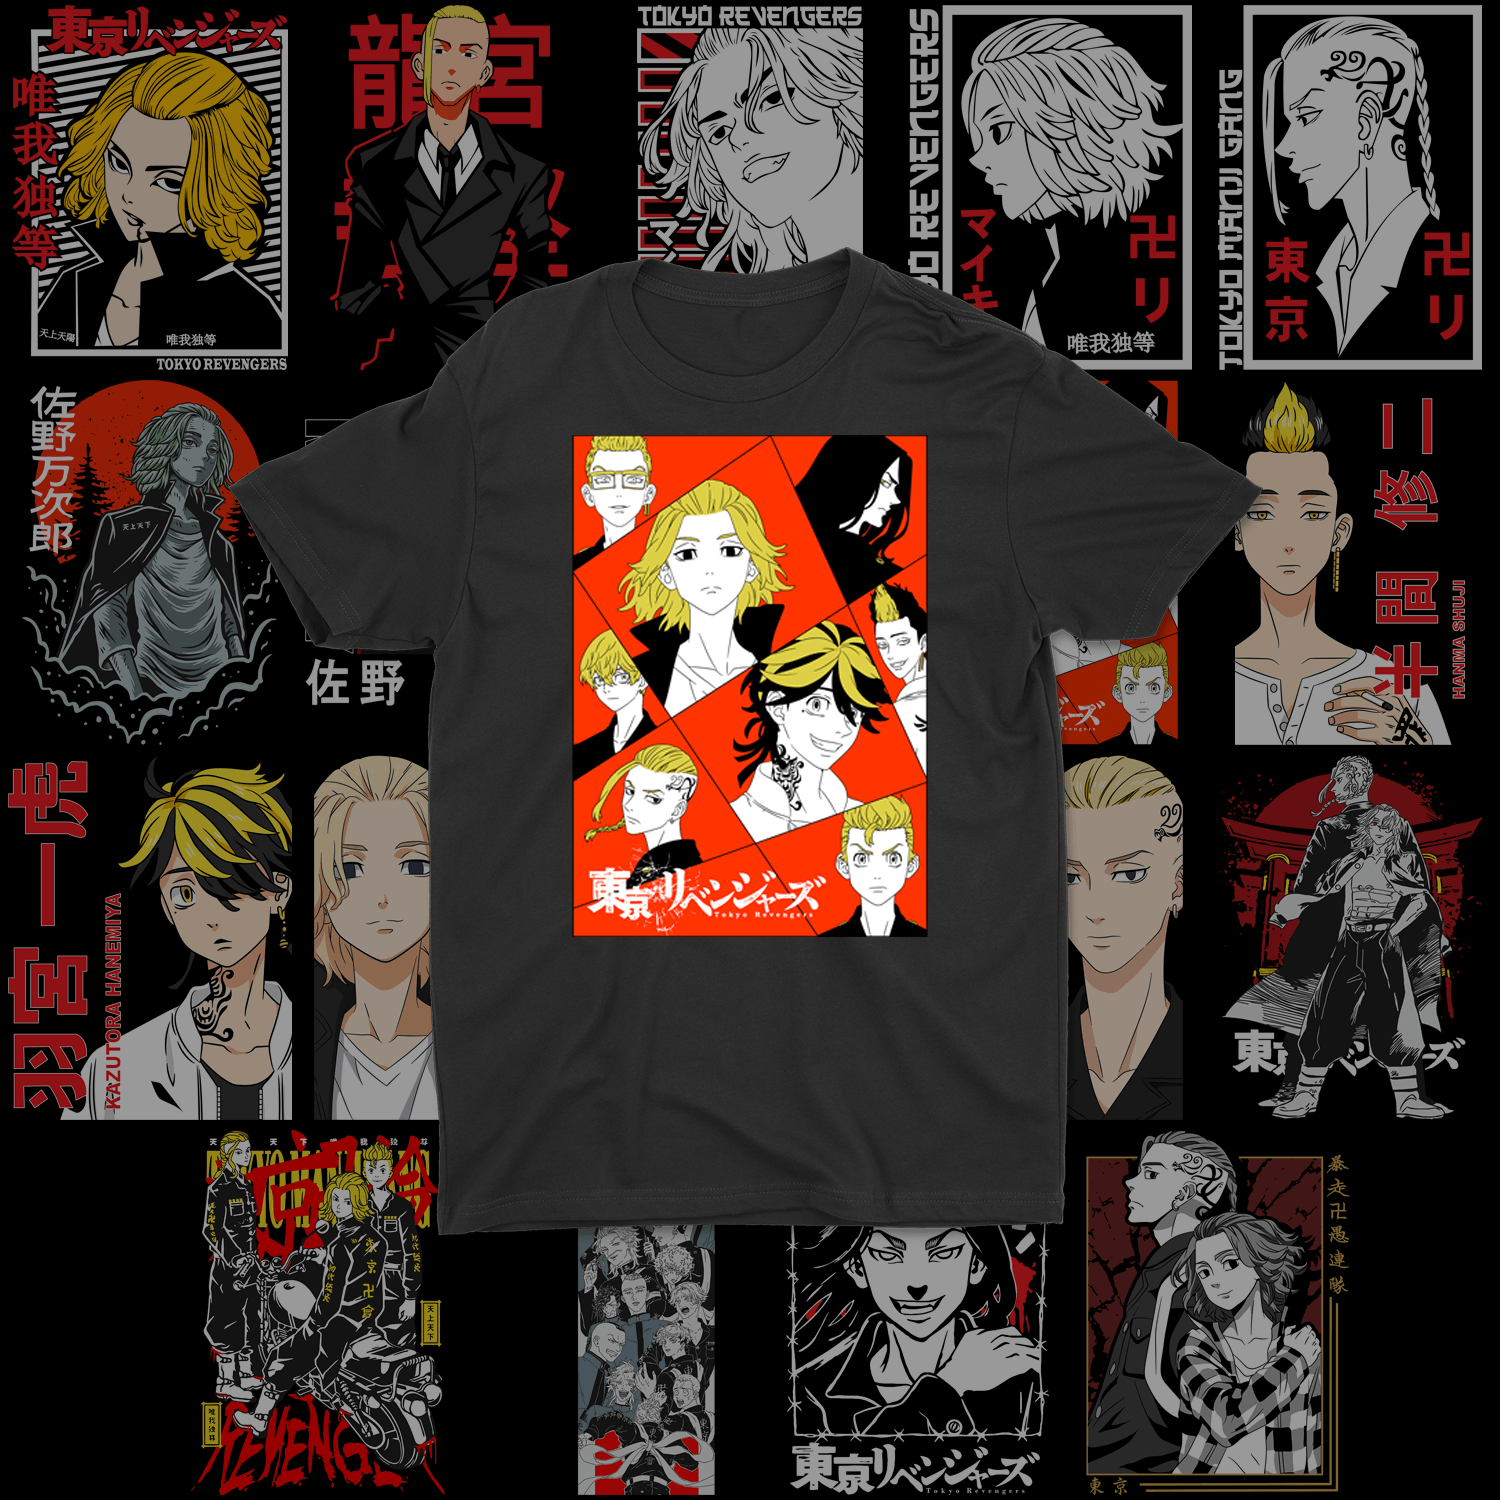 Tokyo Revengers T-Shirt Design Collection - TopTierPrintLab